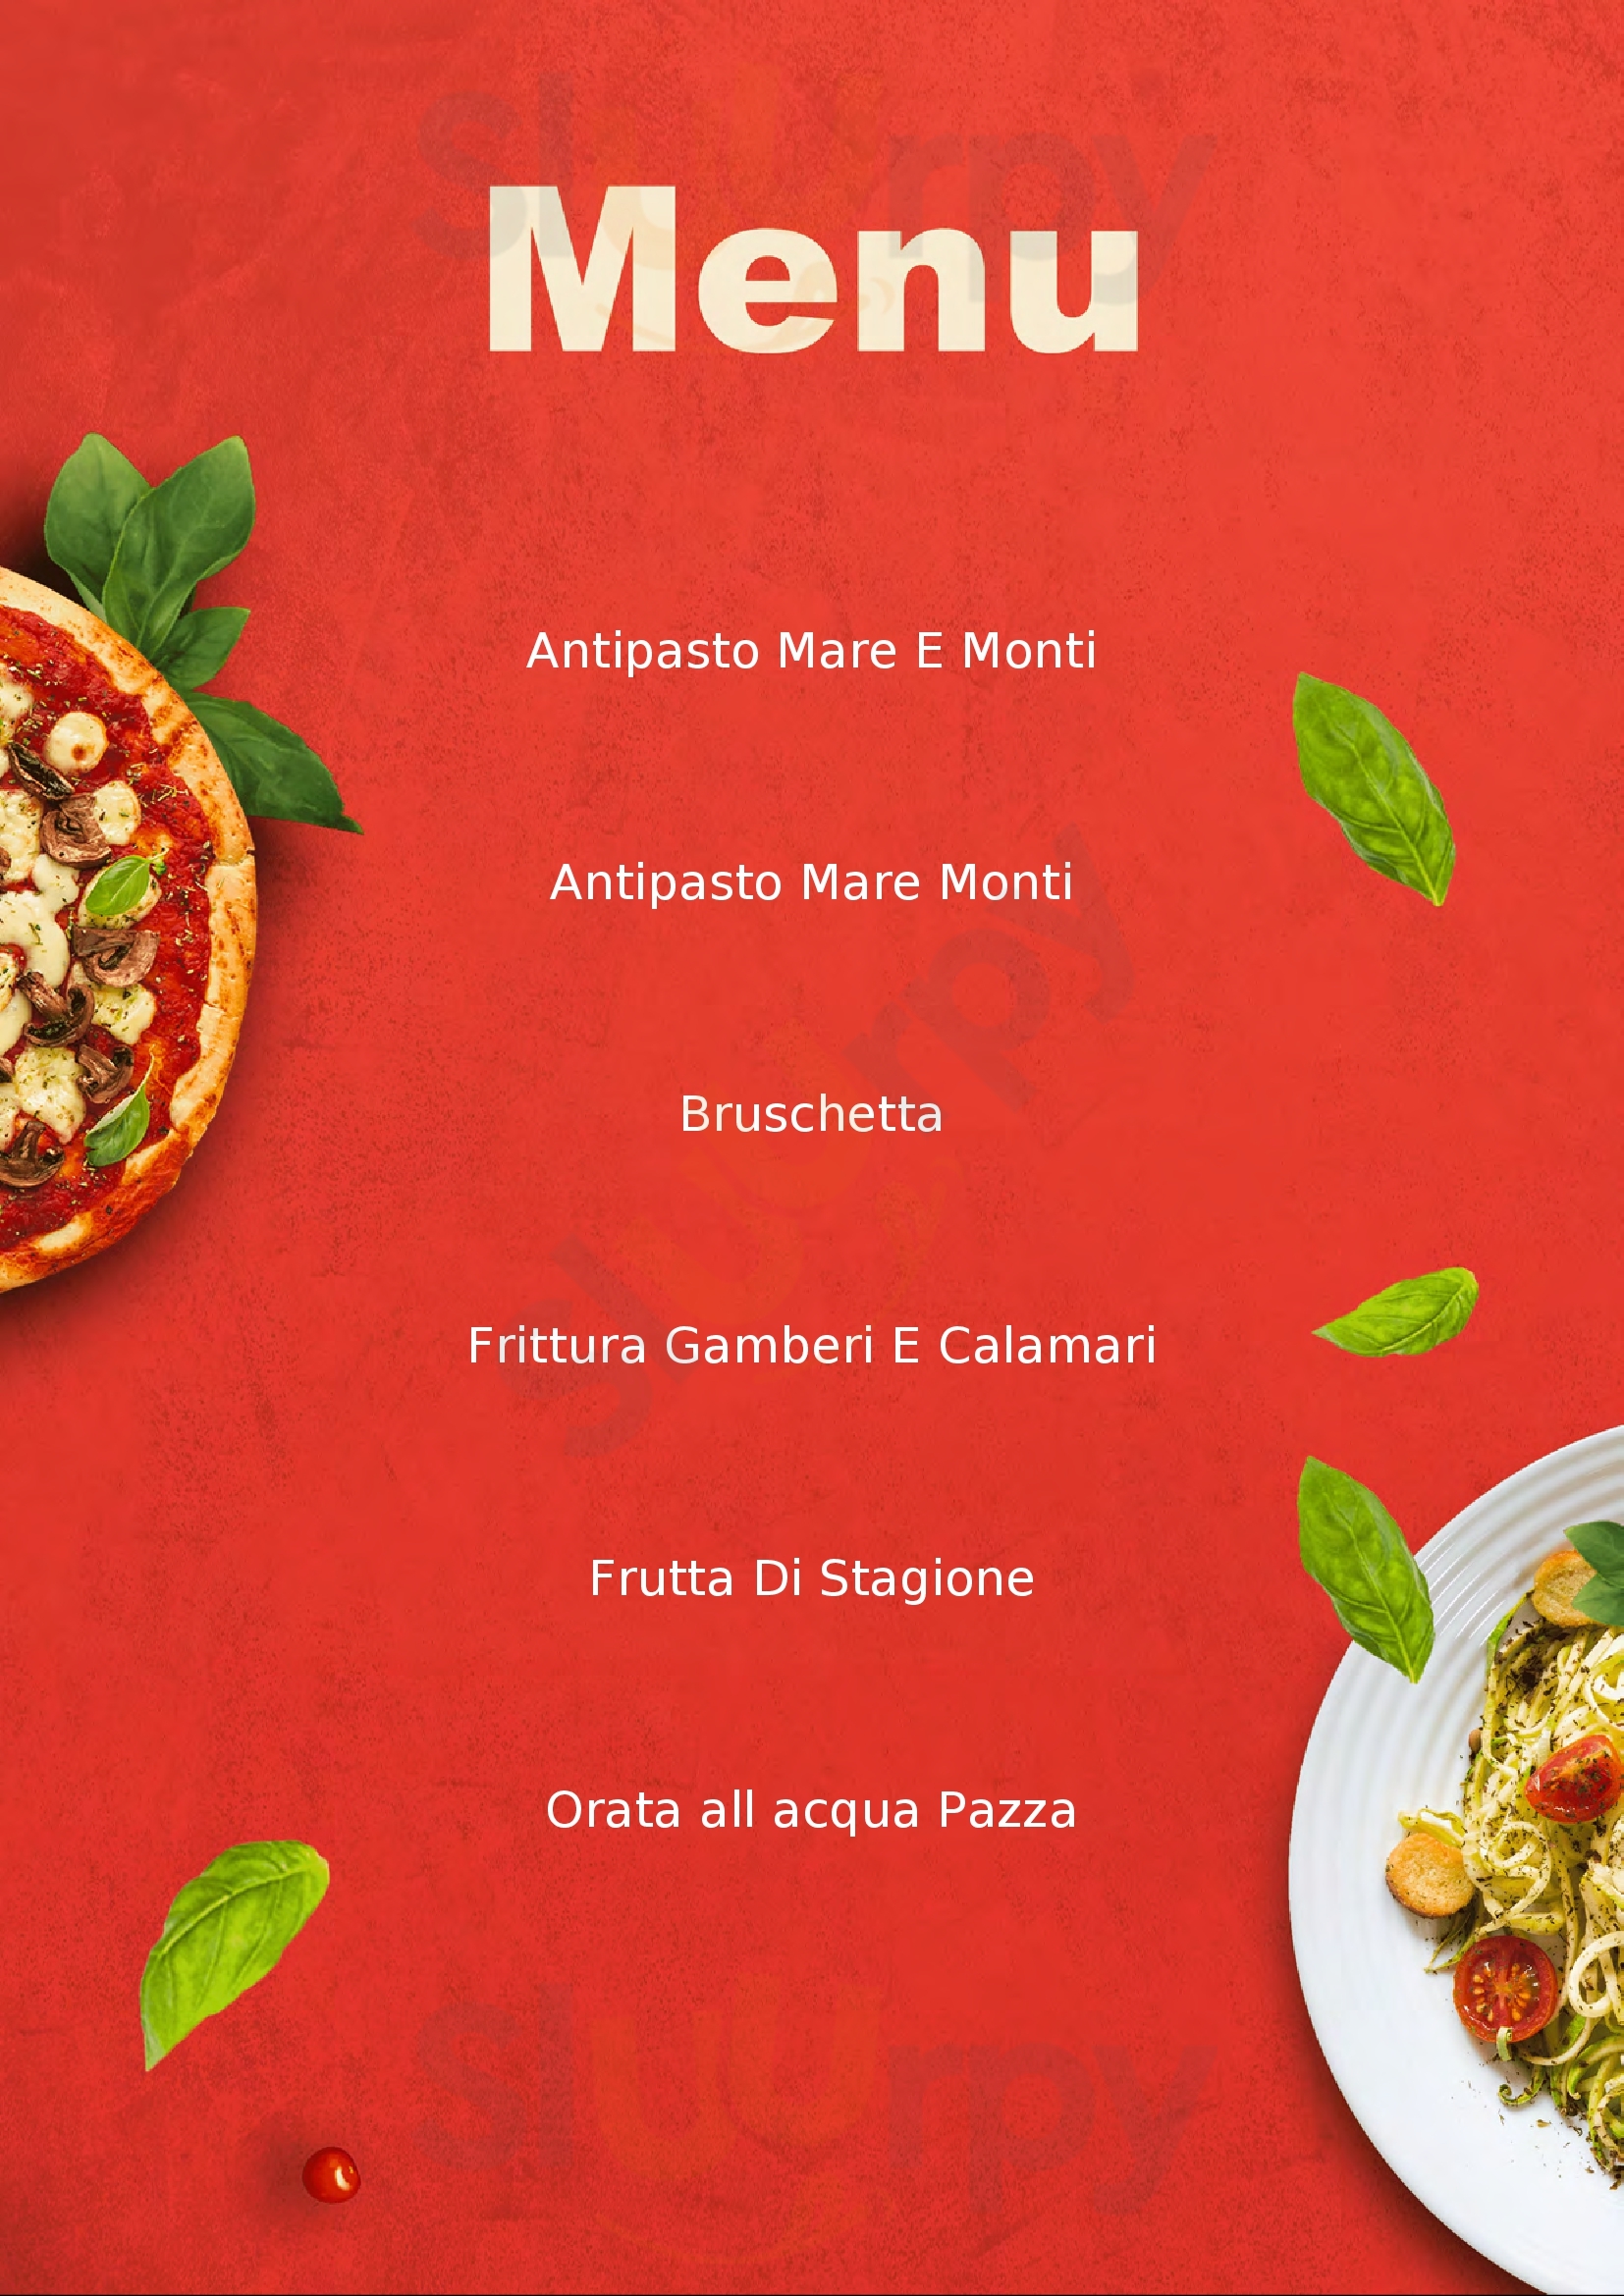 Ristorante Pizzeria Dafne Mondragone menù 1 pagina